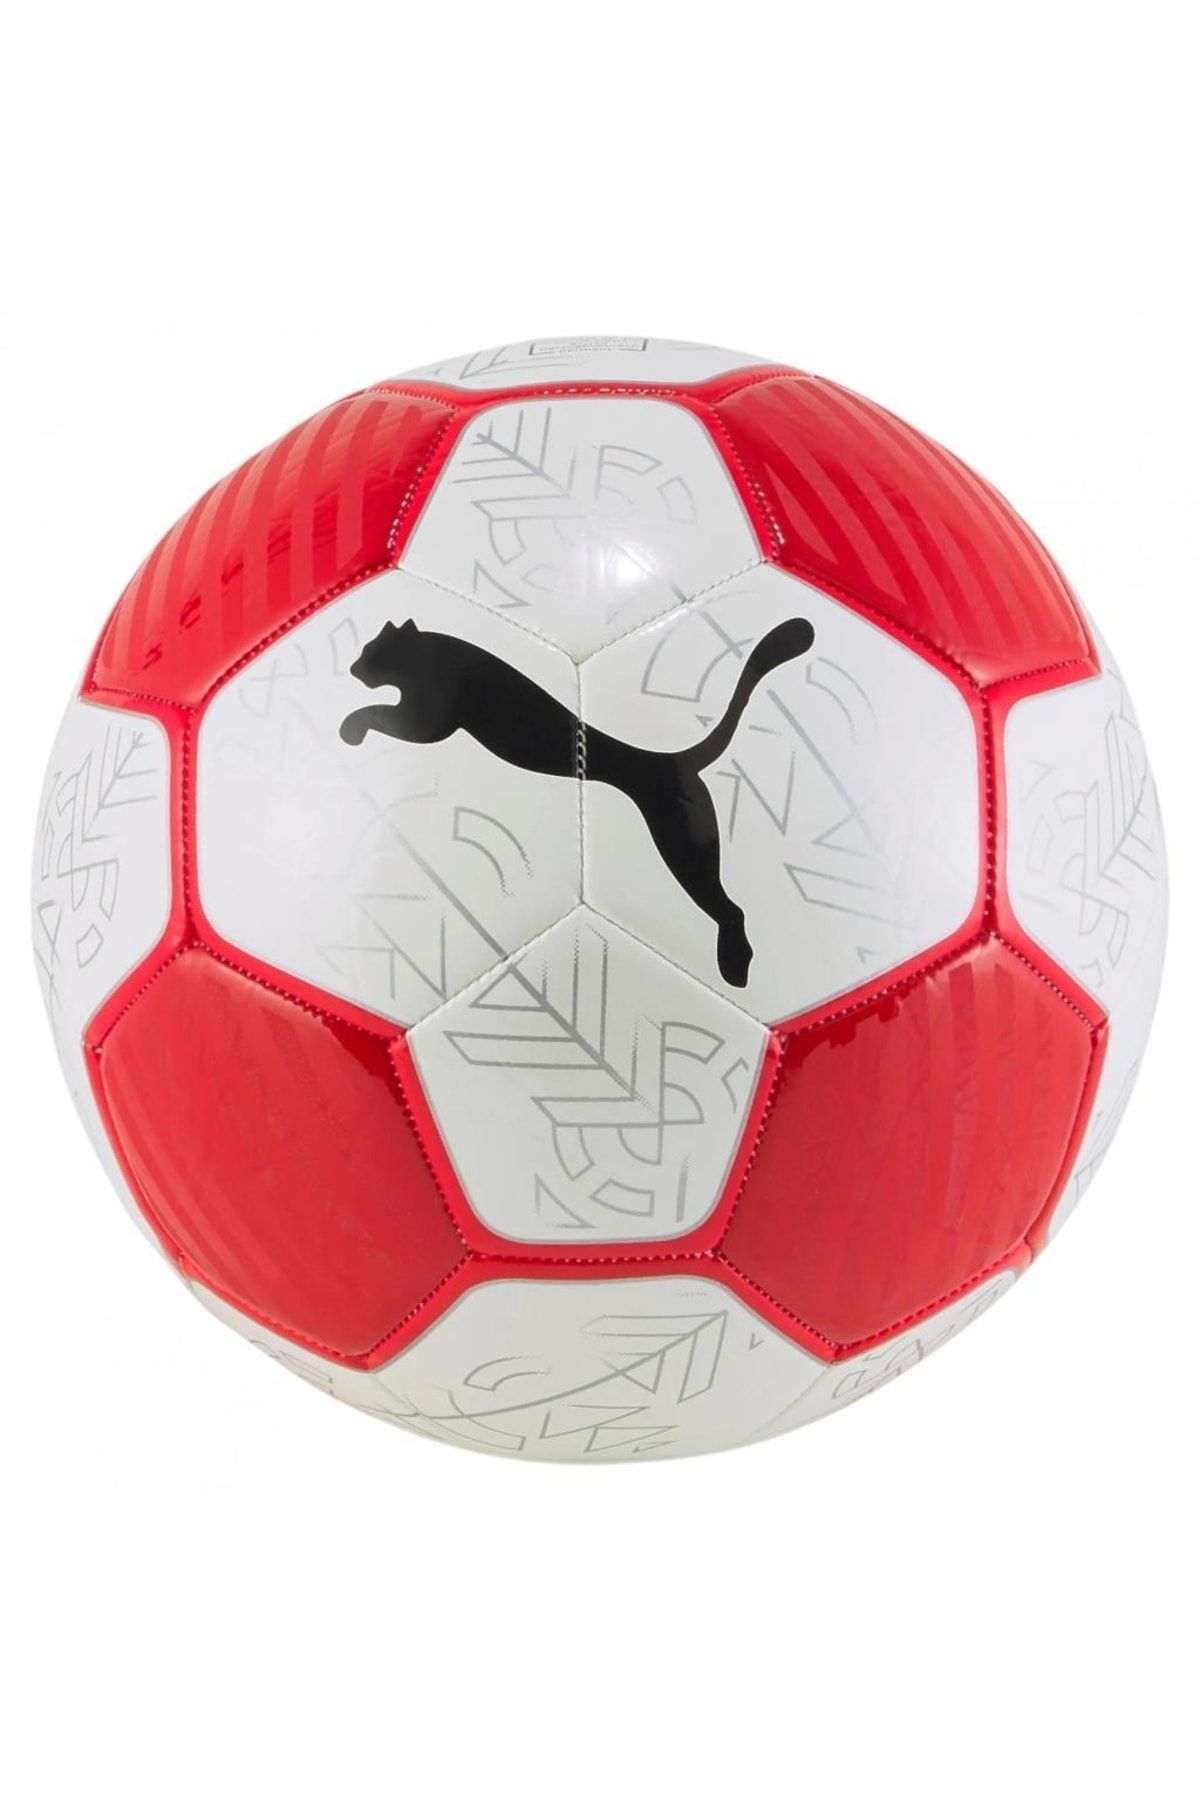 Puma Prestige Ball Futbol Topu Kırmızı 08399202